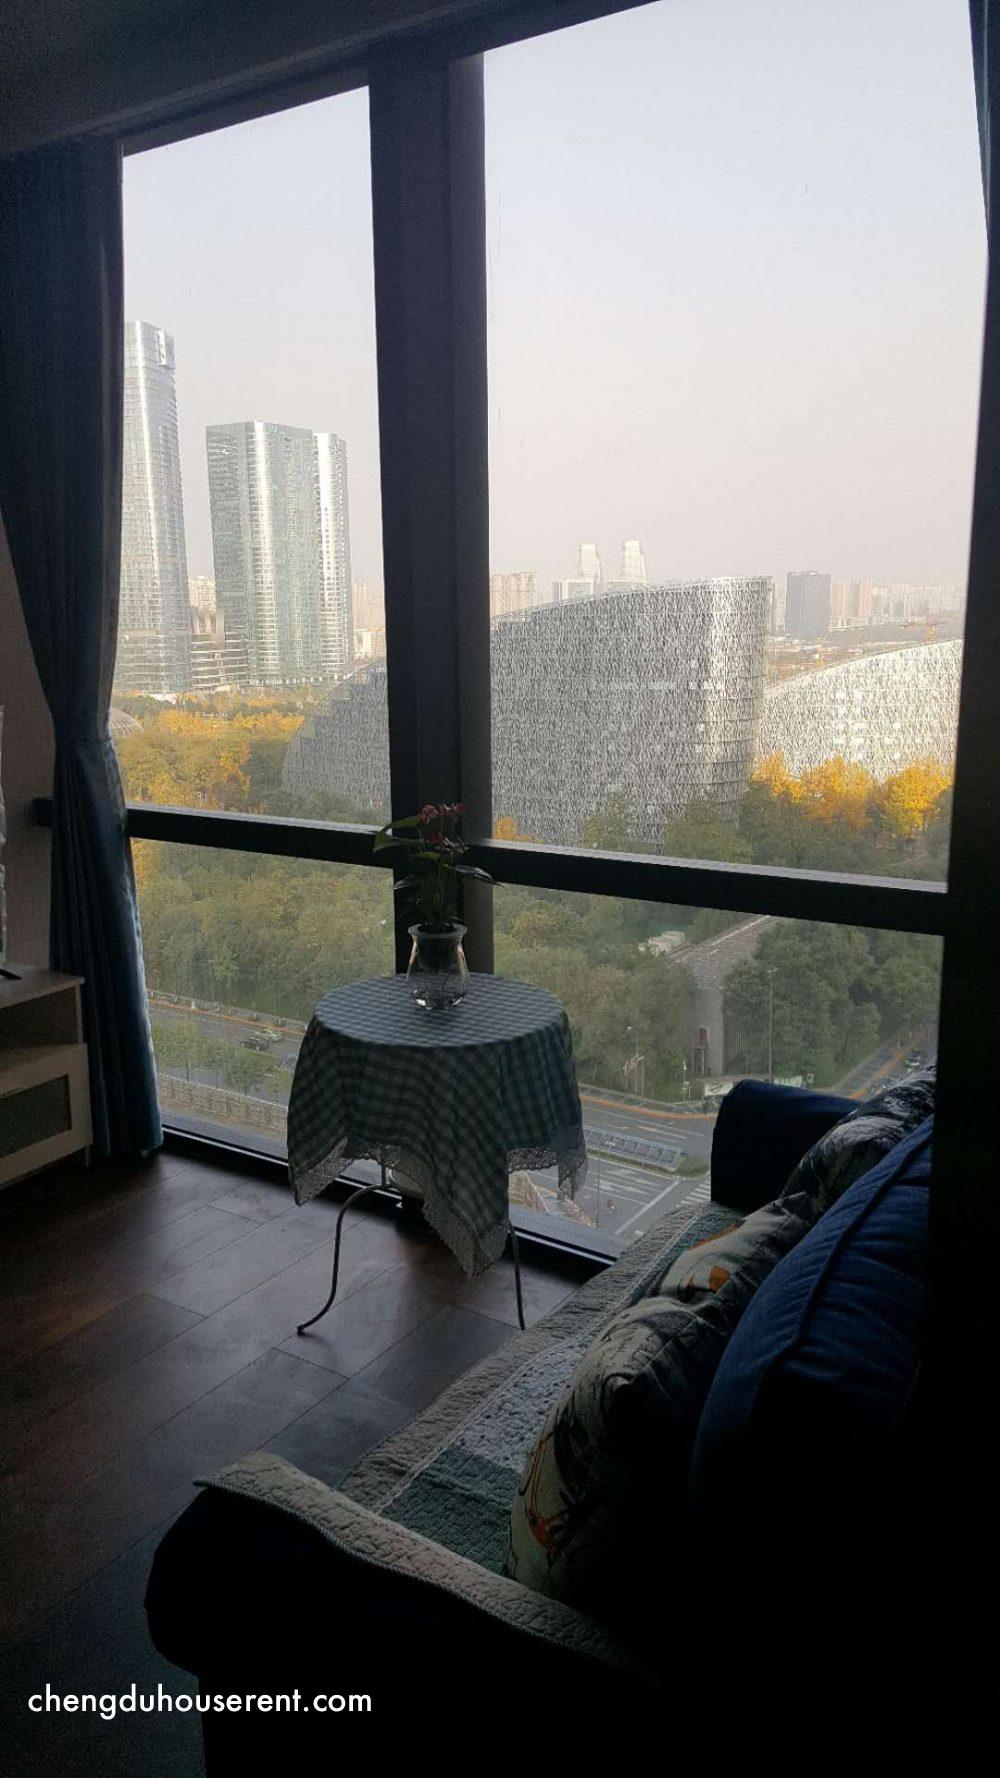 Gaosheng Mansion for rent in Chengdu (6)